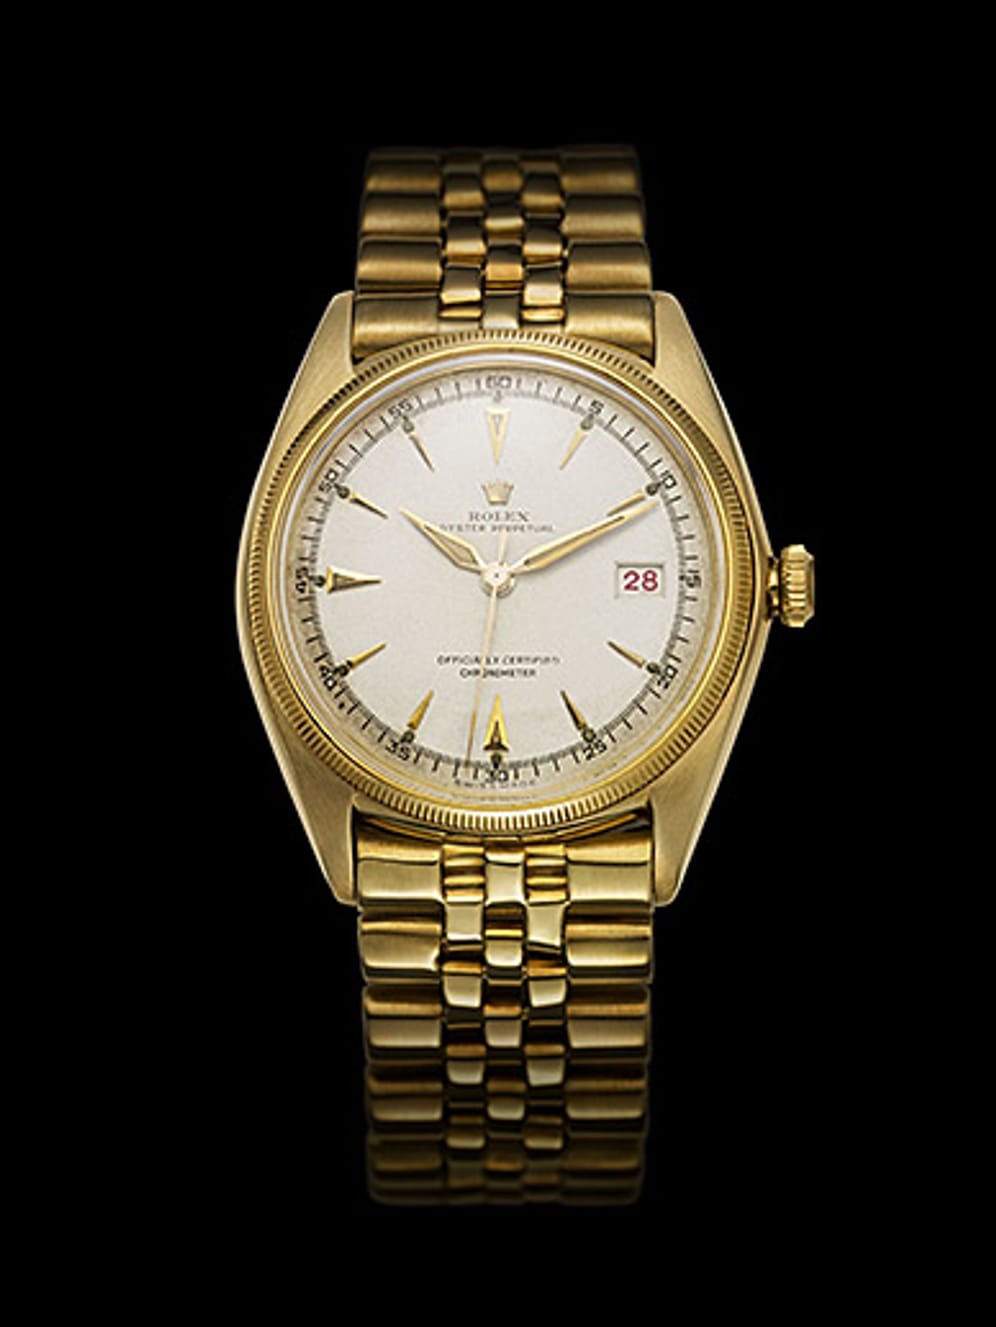 Diese Uhr ist eine Legende: Die goldene Rolex Datejust aus dem Jahr 1945 war die erste Armbanduhr mit automatisch wechselnder Datumsanzeige. Sie genießt den vielleicht höchsten Wiedererkennungswert bei Armbanduhren und wird heute unter Sammlern für über 20.000 Euro gehandelt.